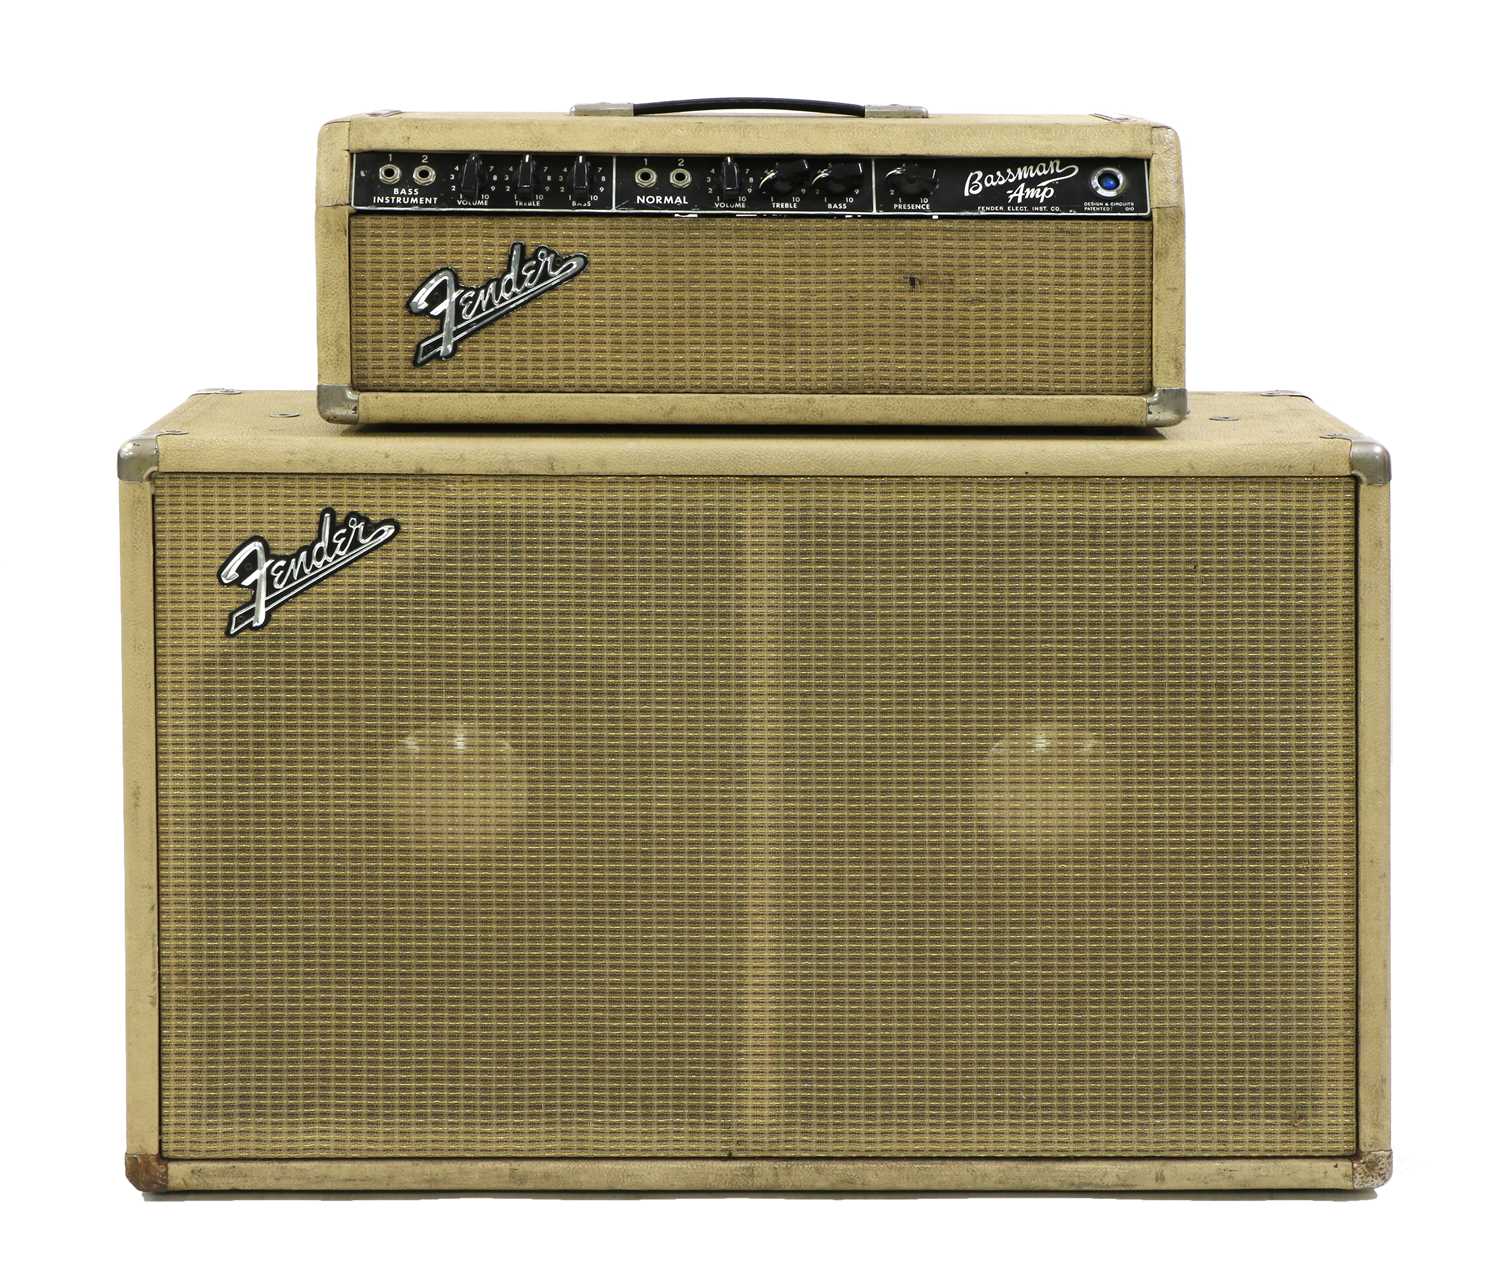 A 1964 Fender Bassman guitar amplifier, - Image 3 of 12